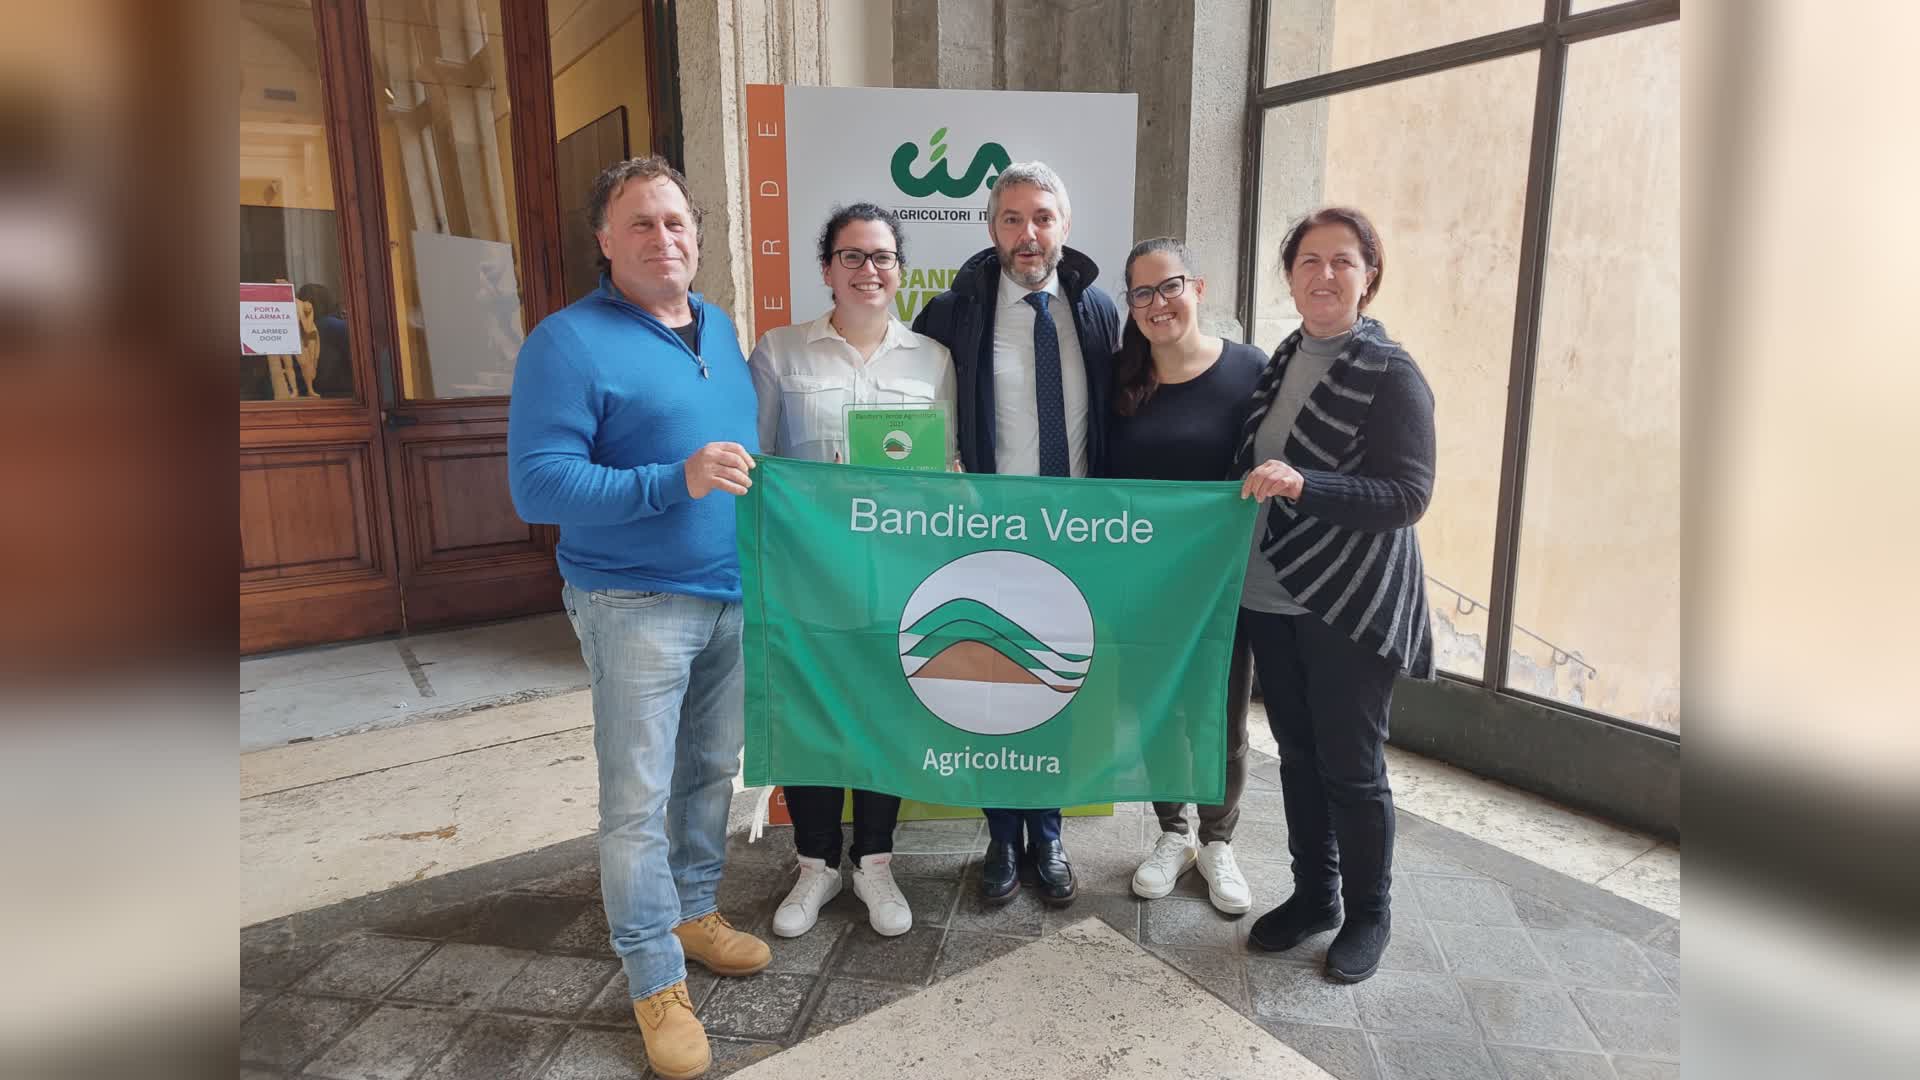 Premio Bandiera Verde: è l’Umbria la regione più premiata